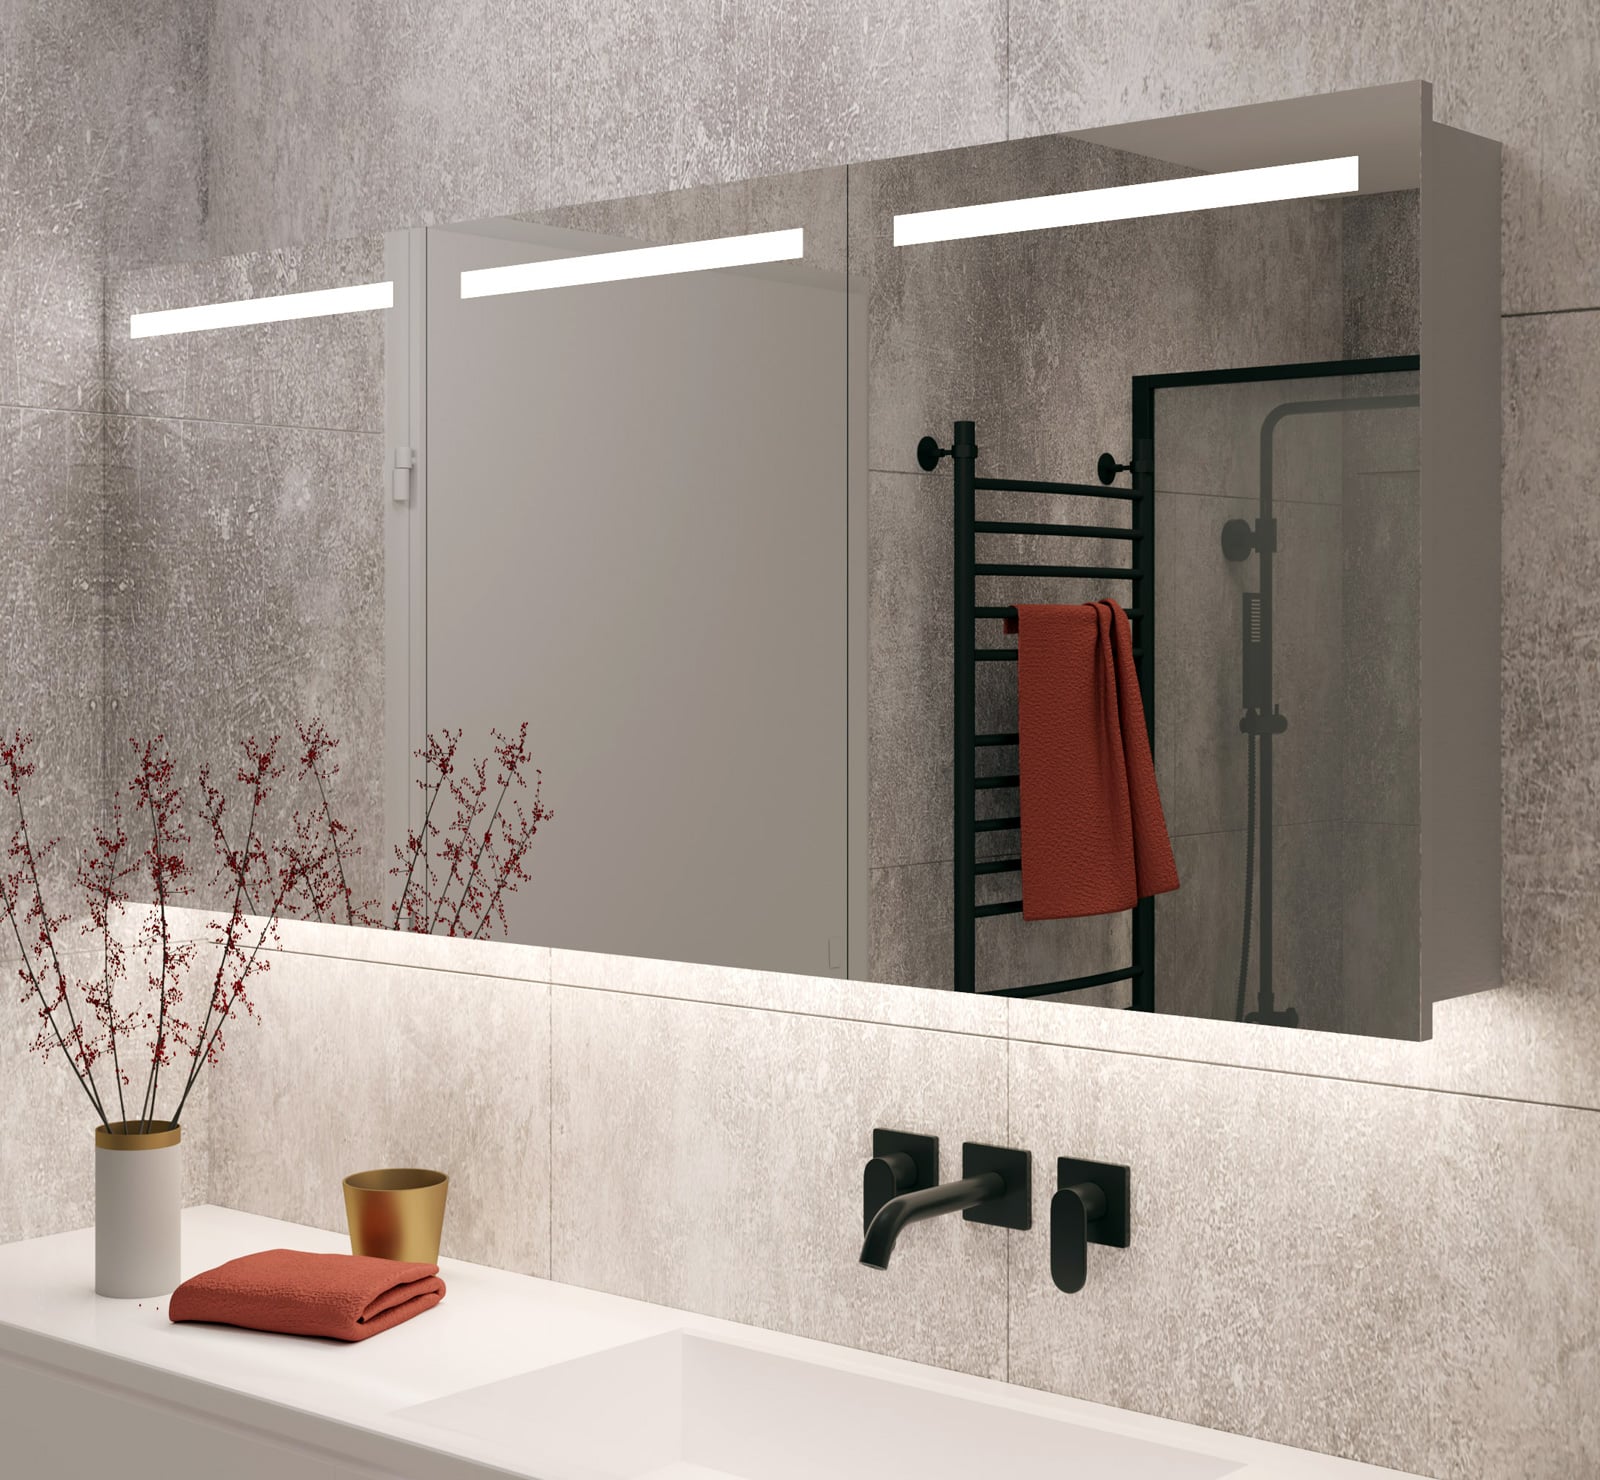 Productie Bezem verlangen Aluminium badkamer spiegelkast met LED verlichting, verwarming, sensor en  stopcontact 160 x 70 cm - Designspiegels